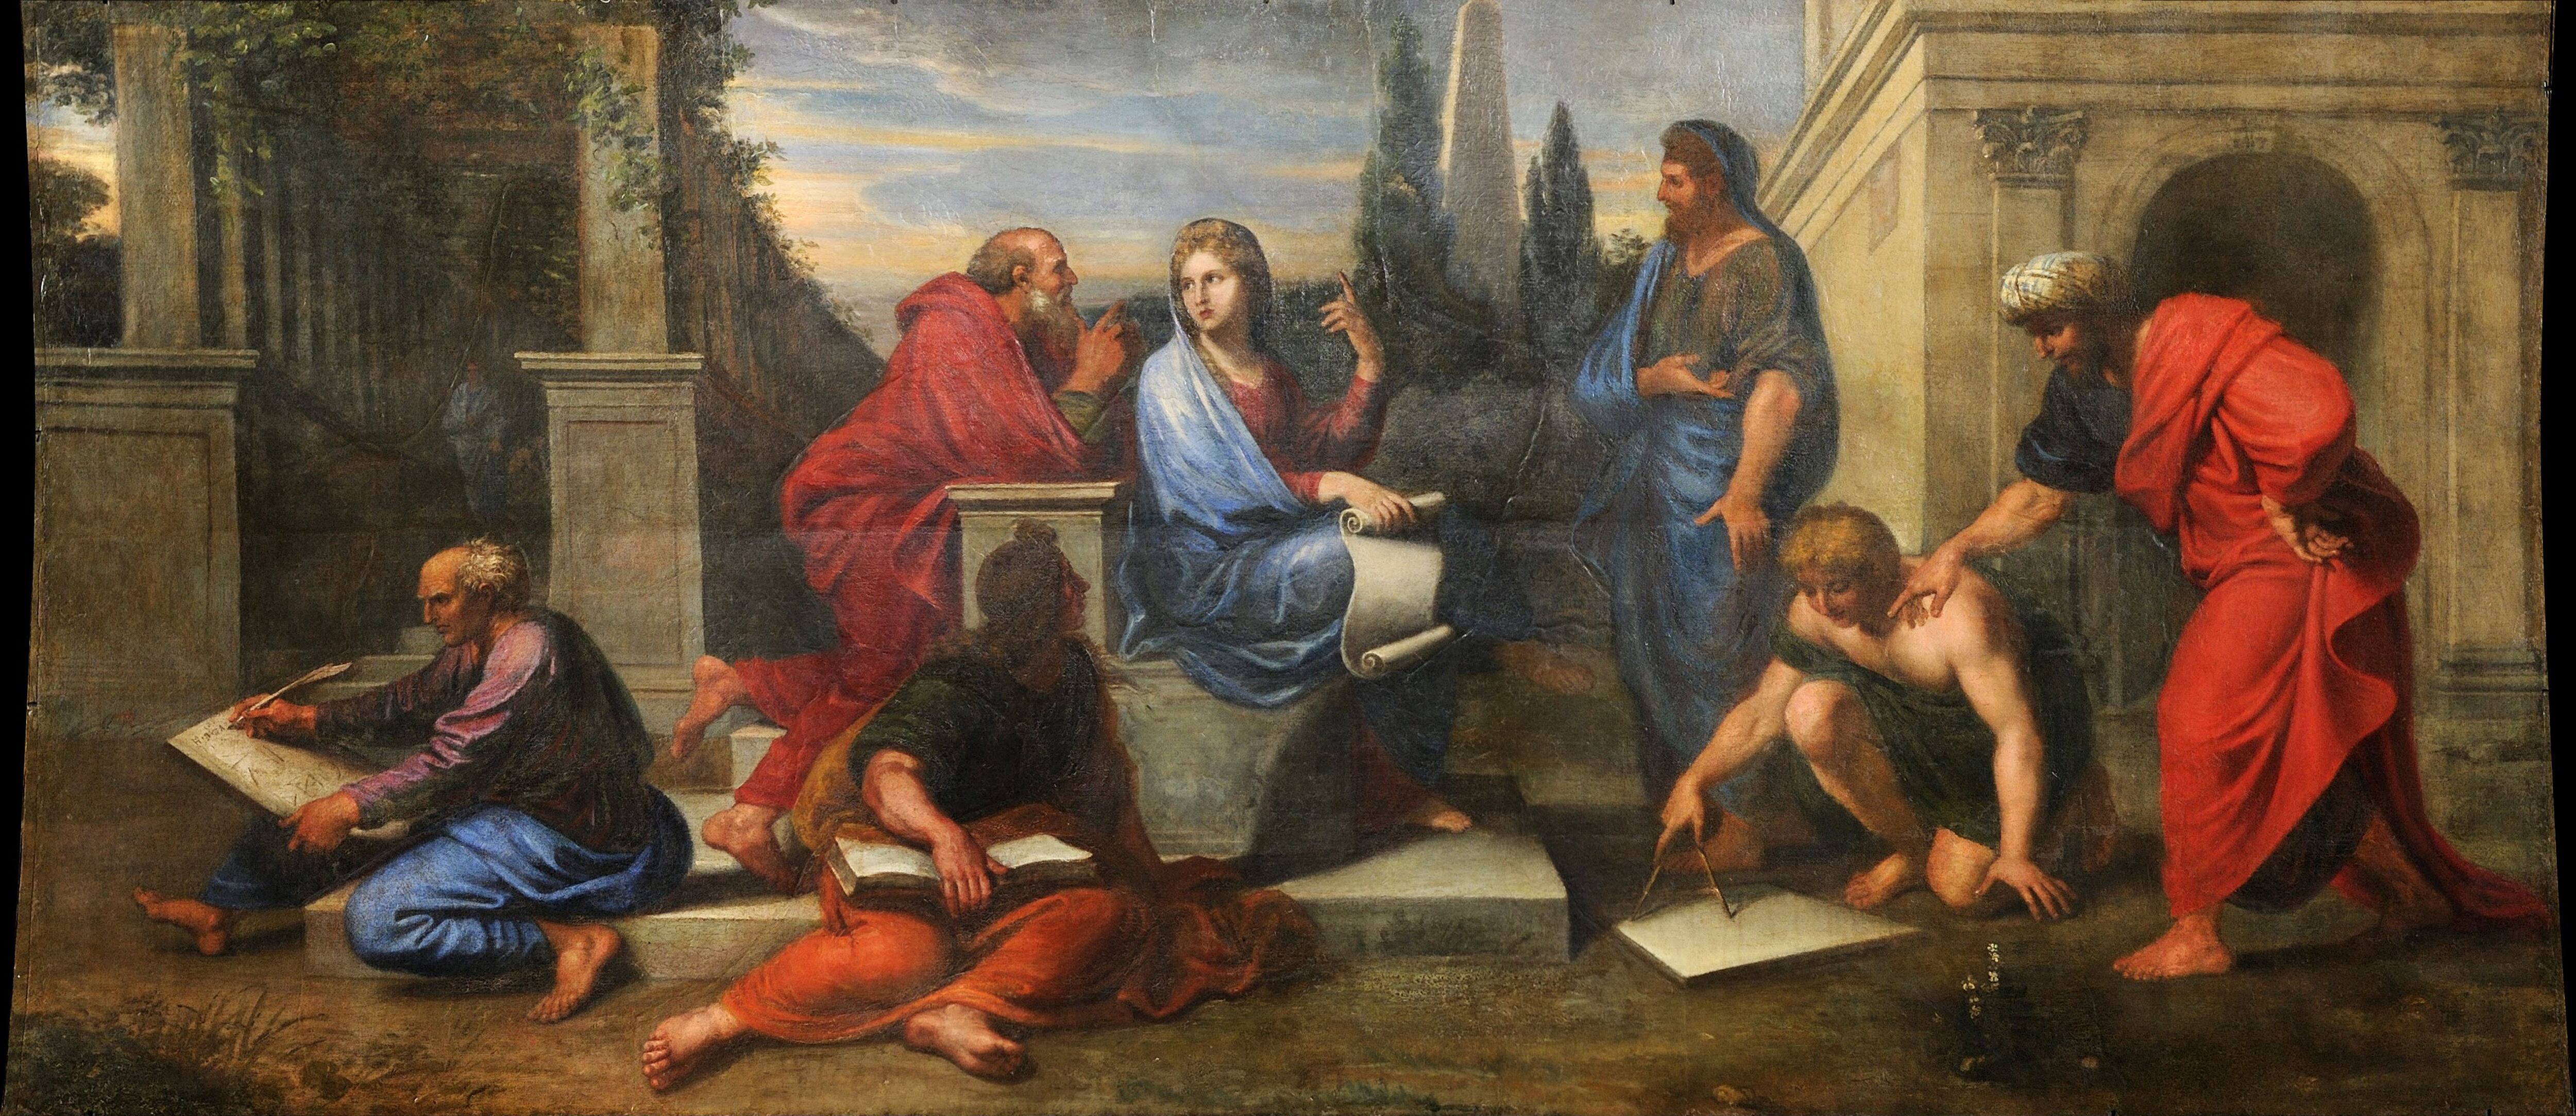 Aspasia rodeada de filósofos griegos, obra de la colección del Museo de la Historia de Francia. 